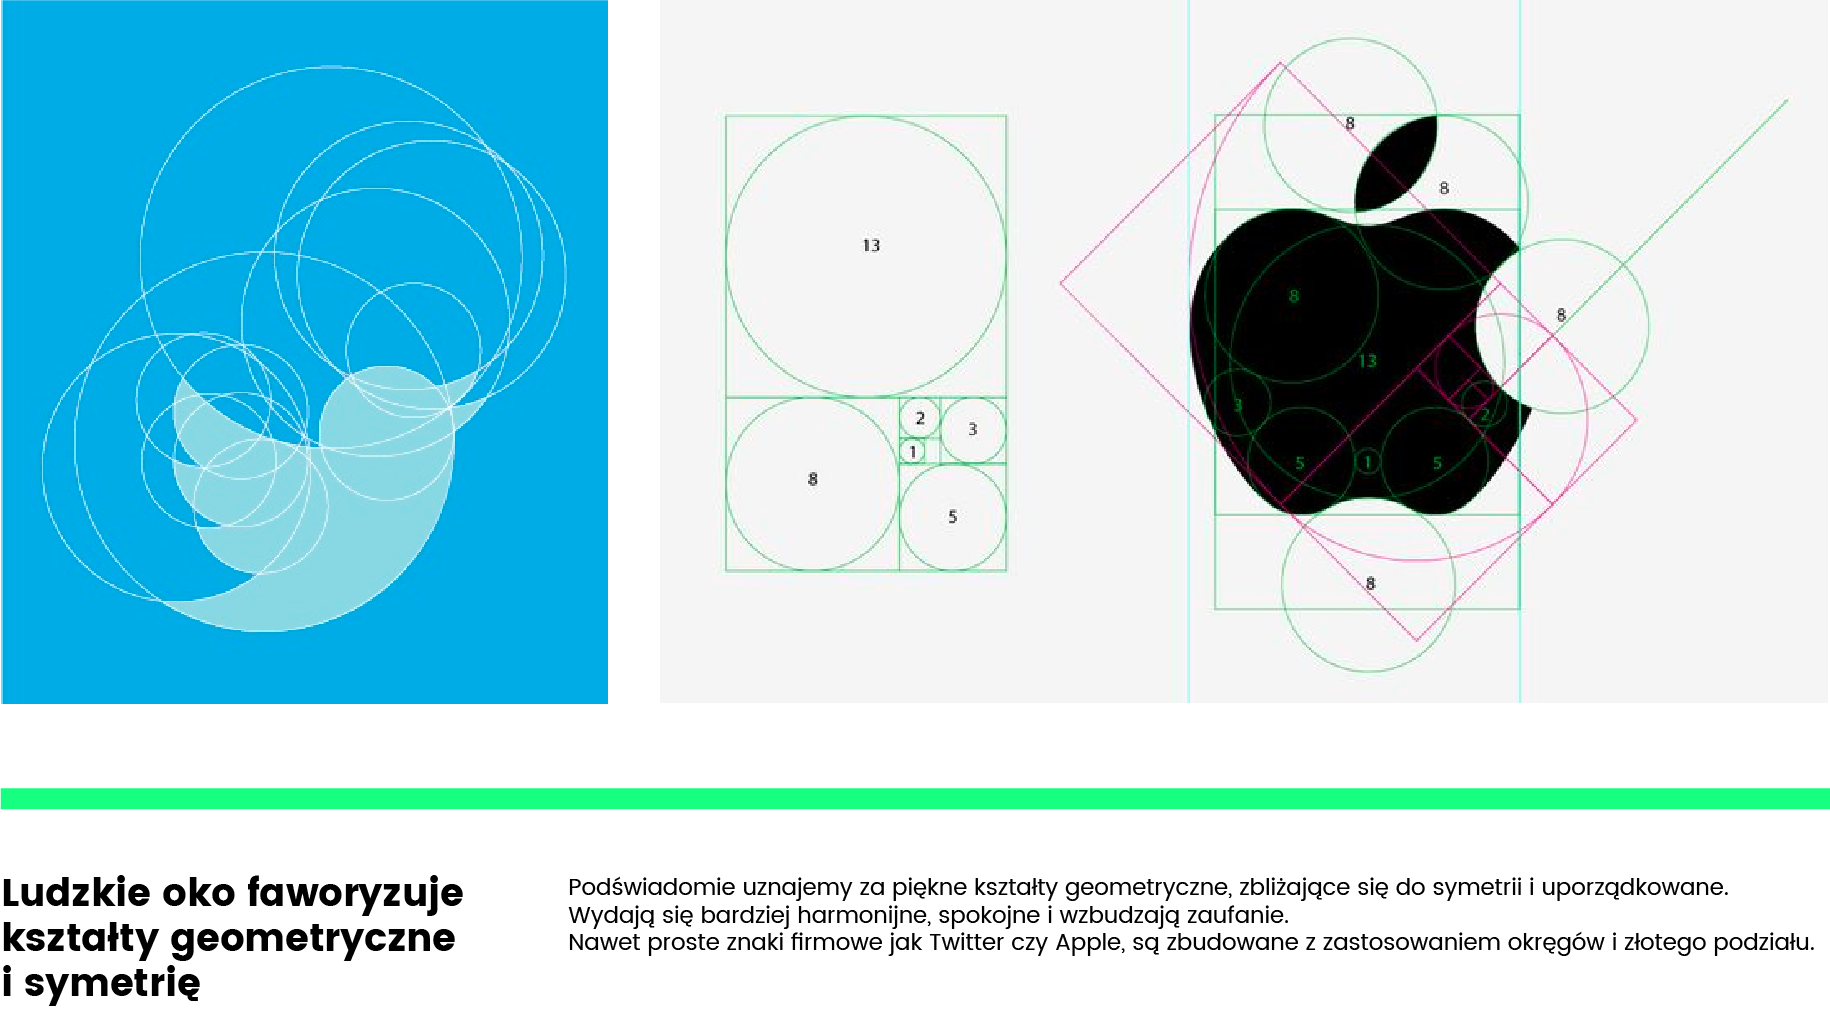 Logo Twitter, logo Apple - jak zaprojektować dobre logo?